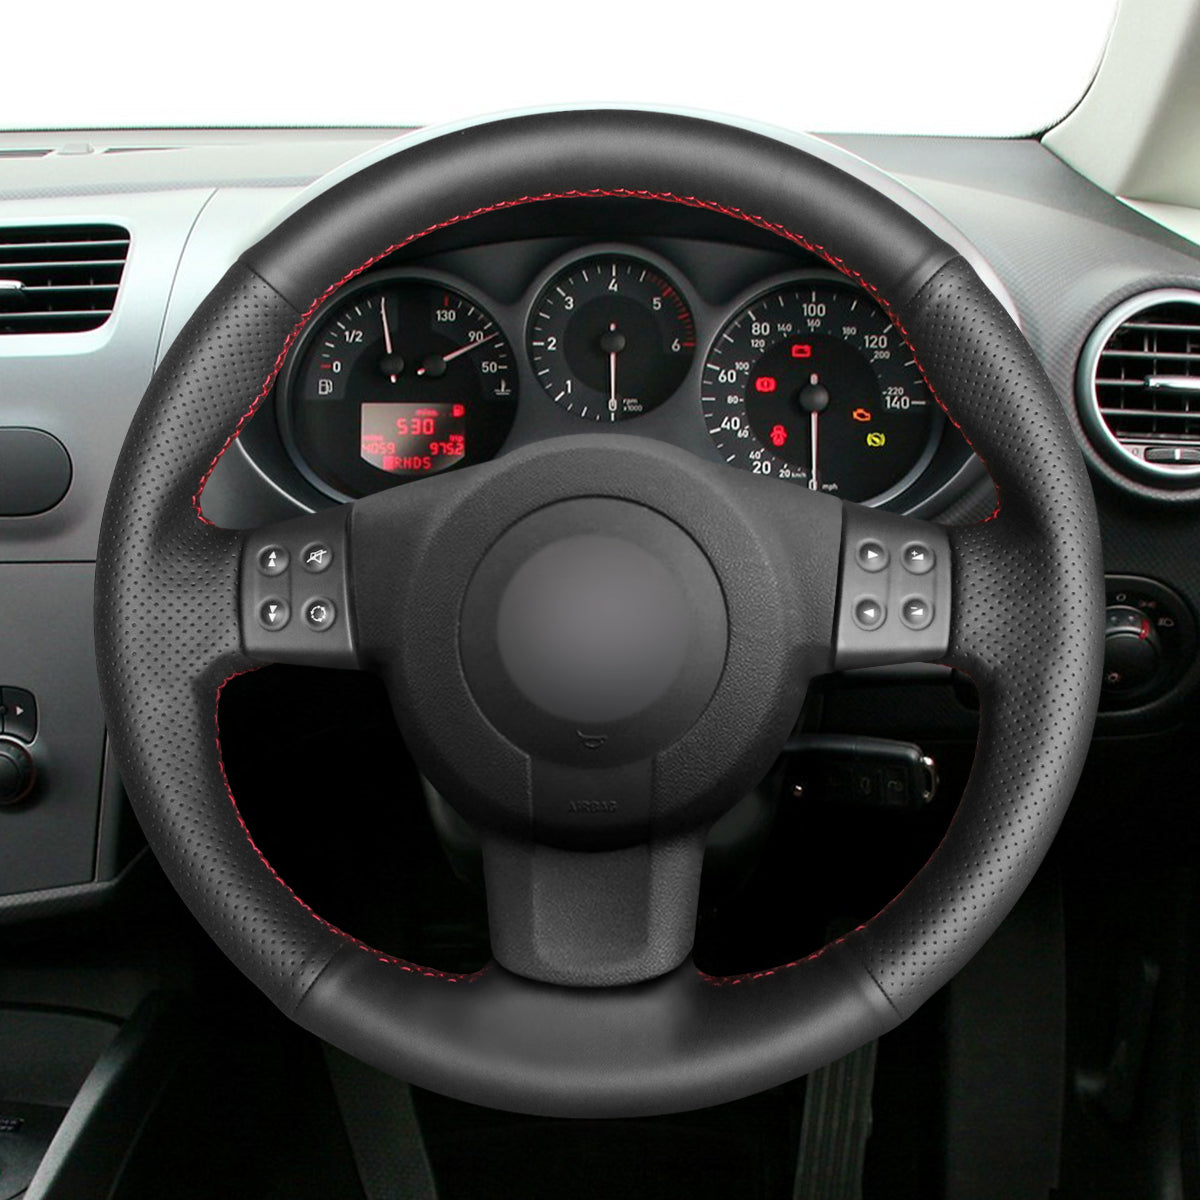 Car steering wheel cover for Seat Leon (MK2 1P) 2005-2009 / Ibiza (6L) 2005-2009 / Altea 2004-2009 / Altea XL 2007-2009 / Toledo 2004-2008